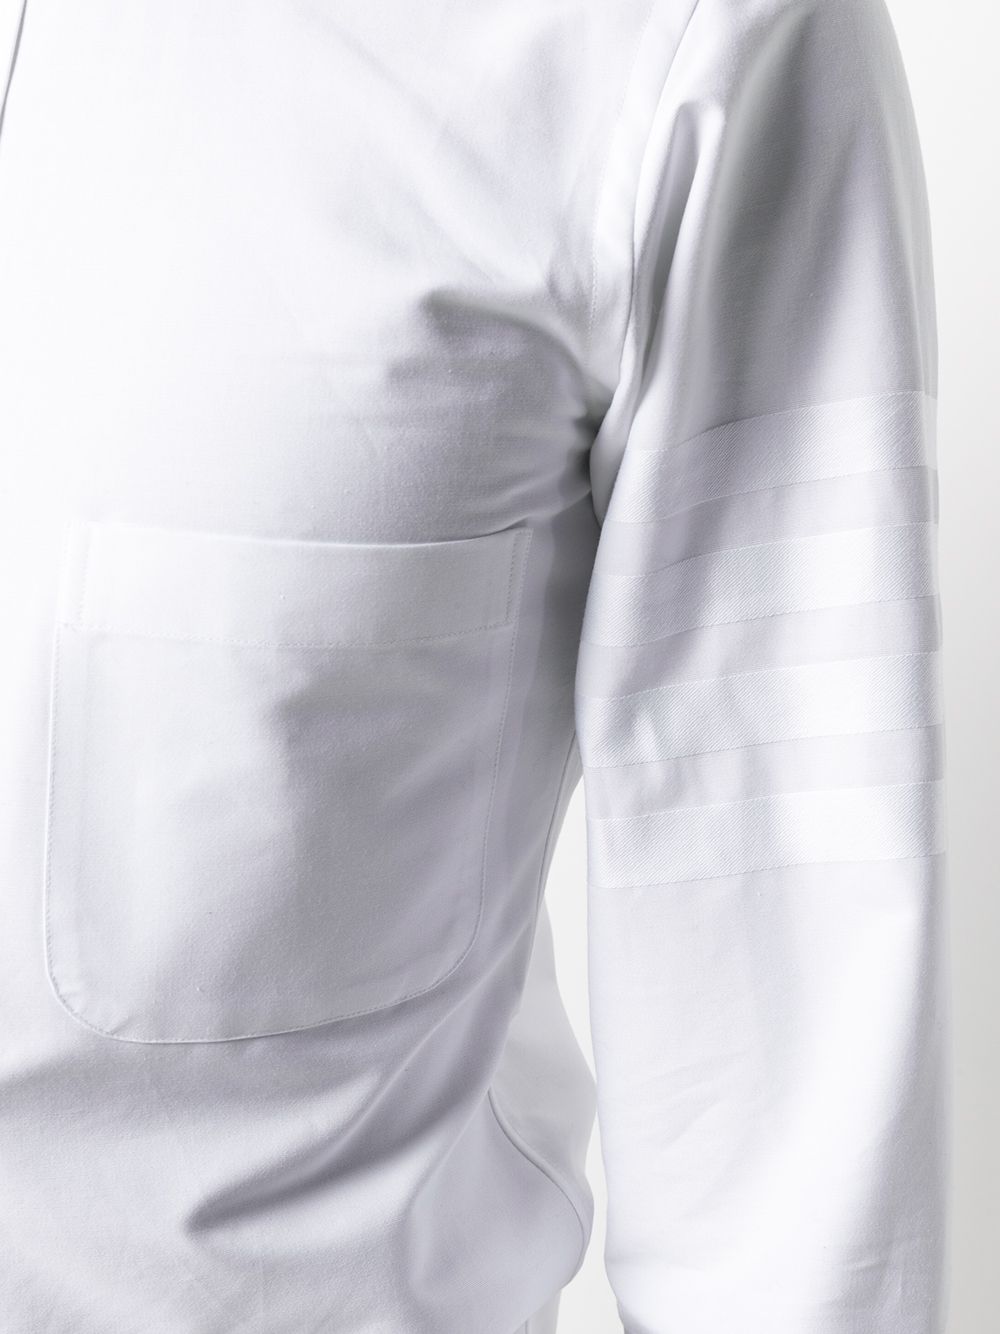 [톰브라운] 남성 화이트 사선 완장 차이나카라 옥스포드 긴팔 셔츠 (화이트) MWL163A 06496 100